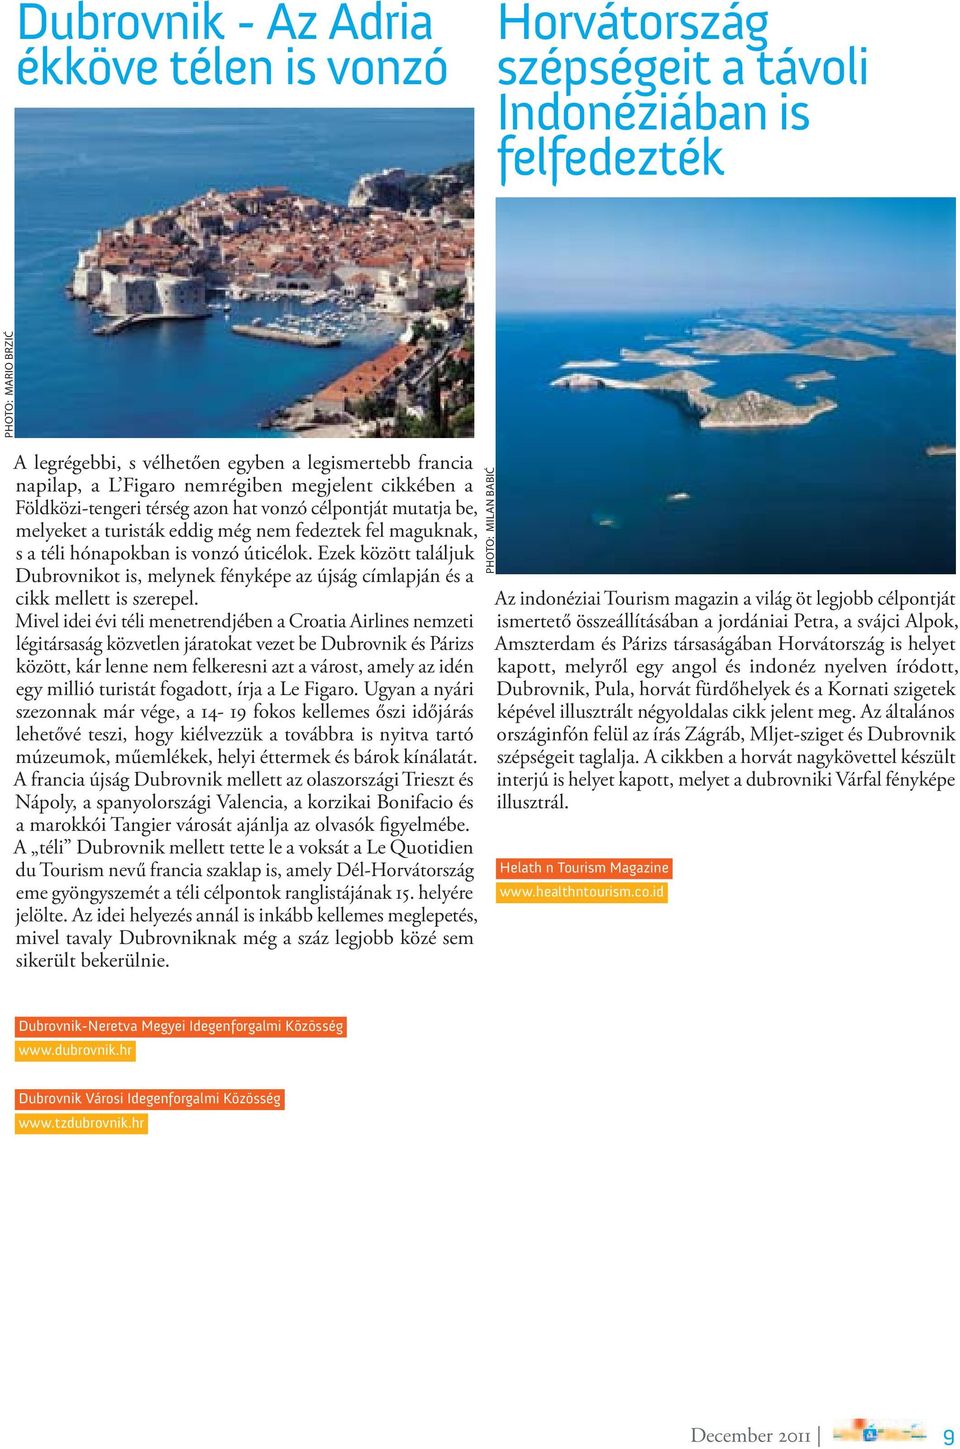 Ezek között találjuk Dubrovnikot is, melynek fényképe az újság címlapján és a cikk mellett is szerepel.